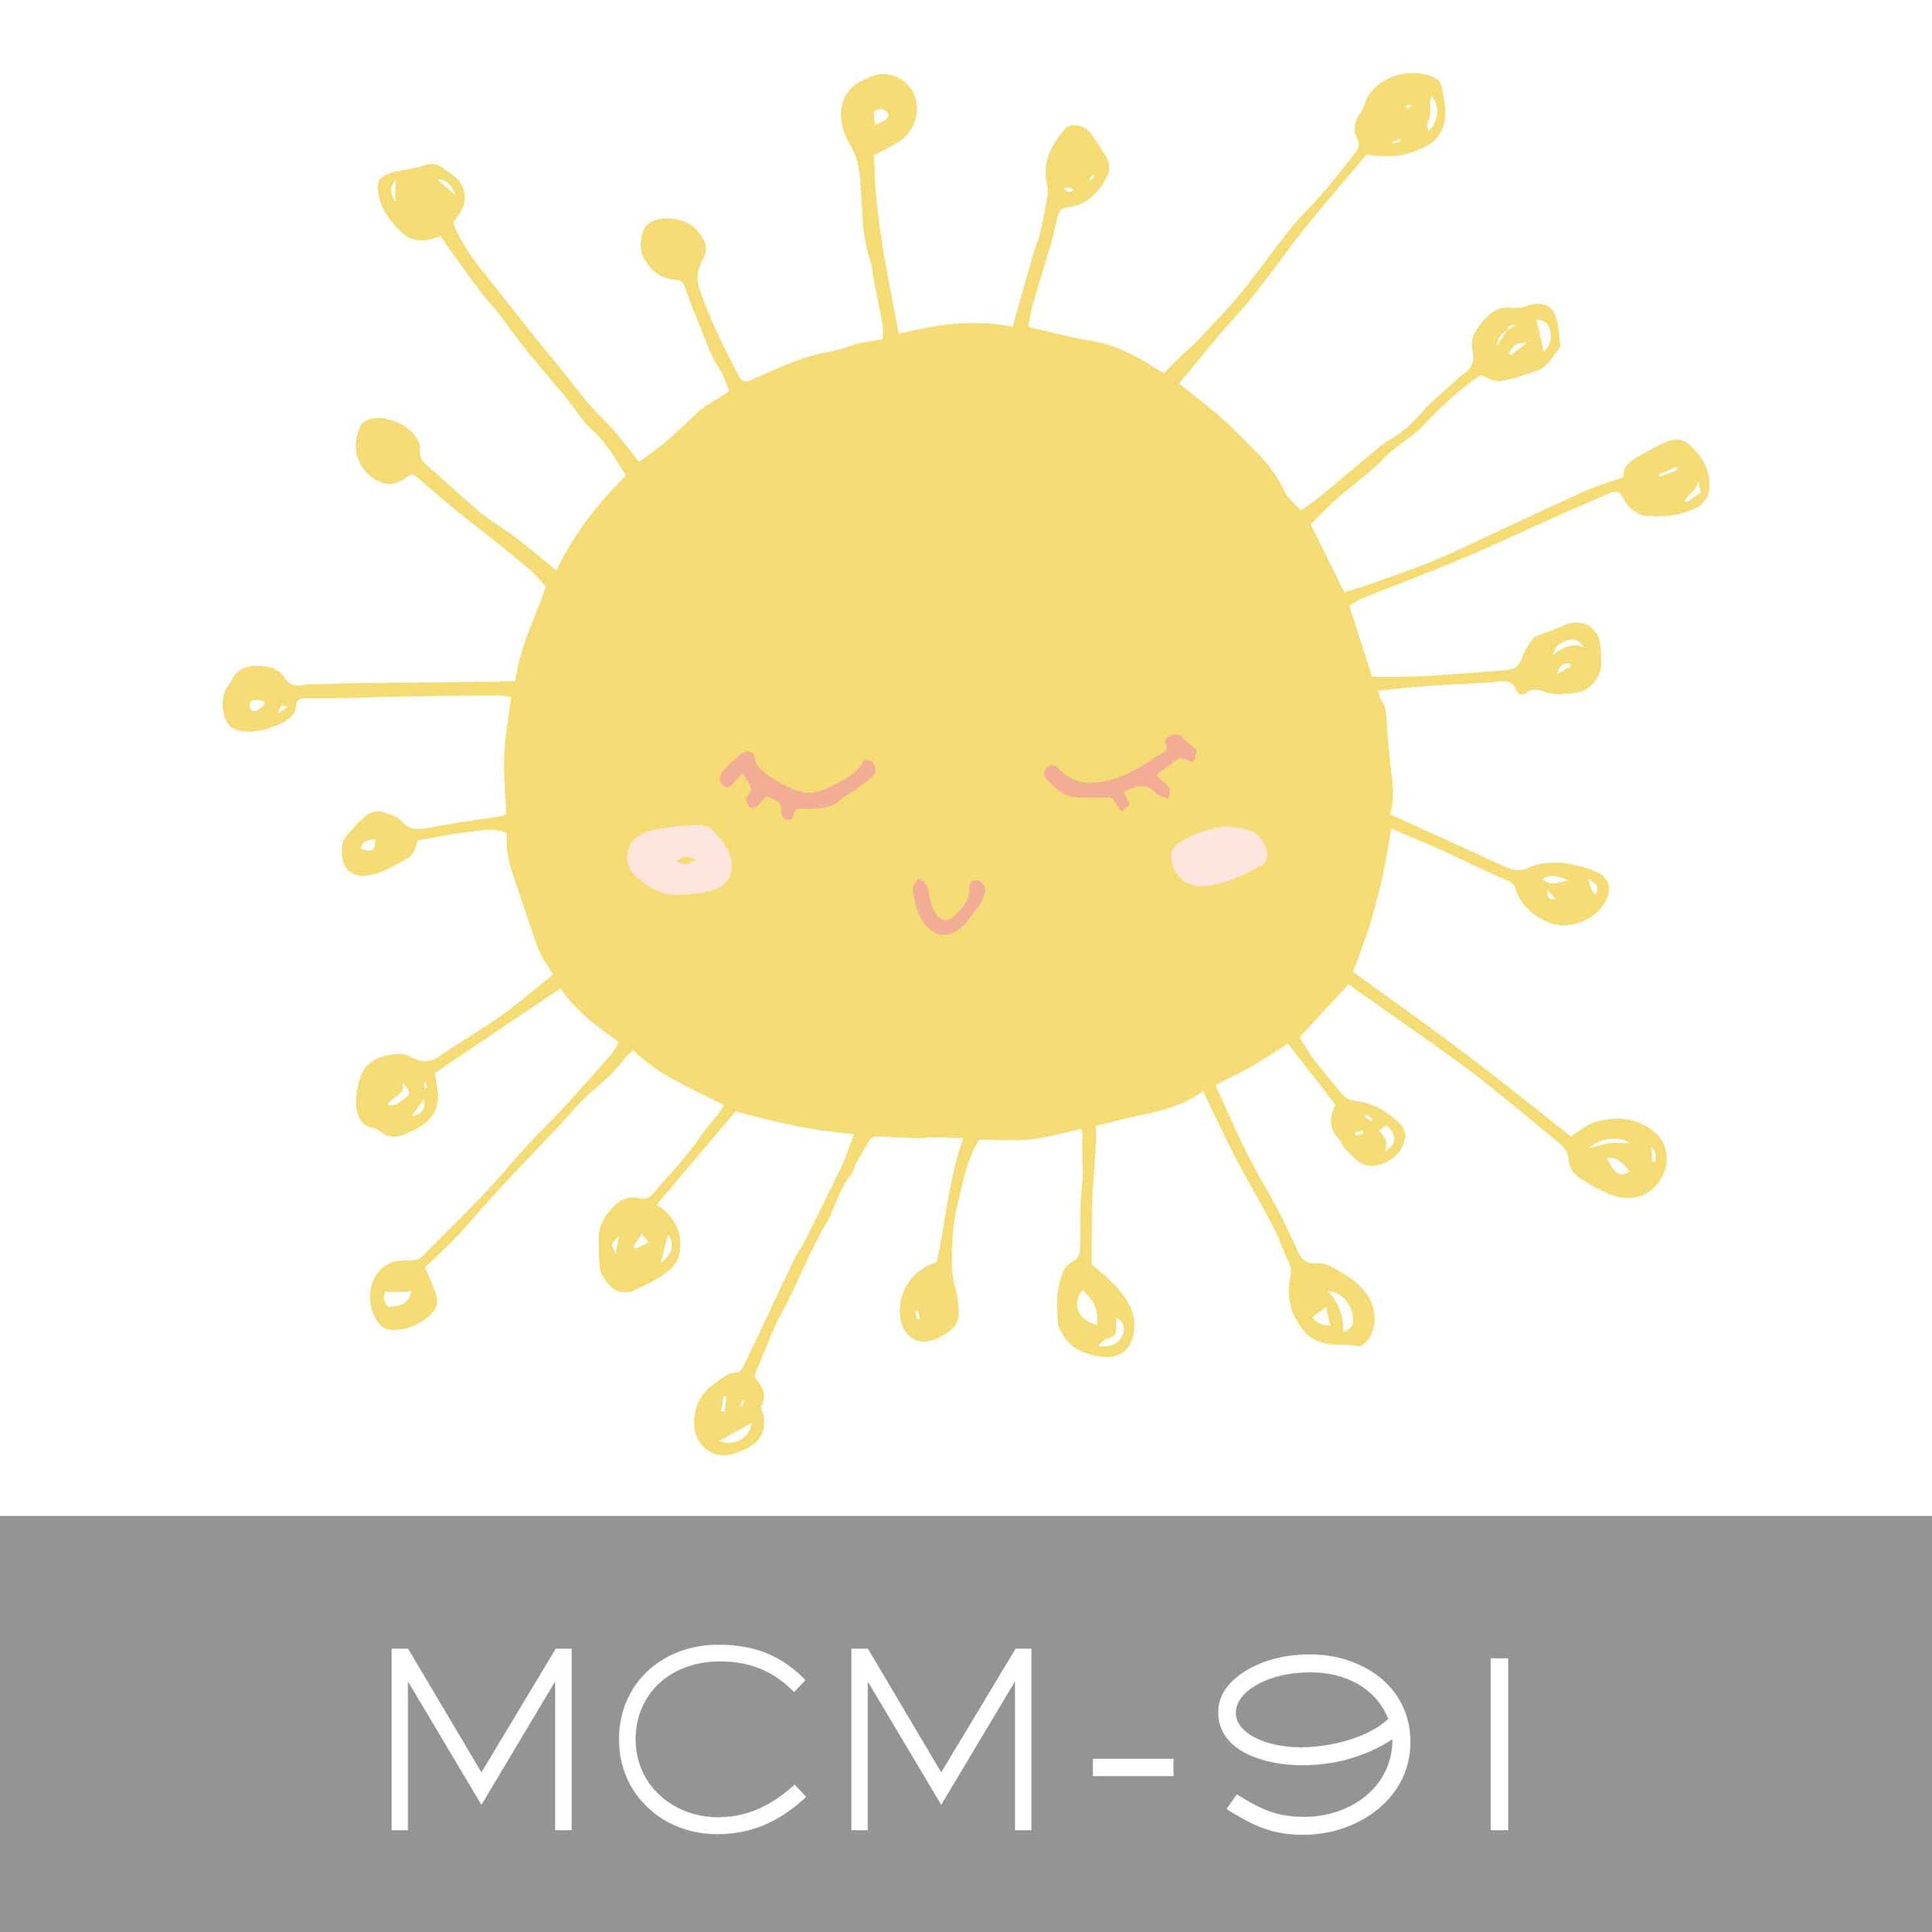 MCM-91.jpg